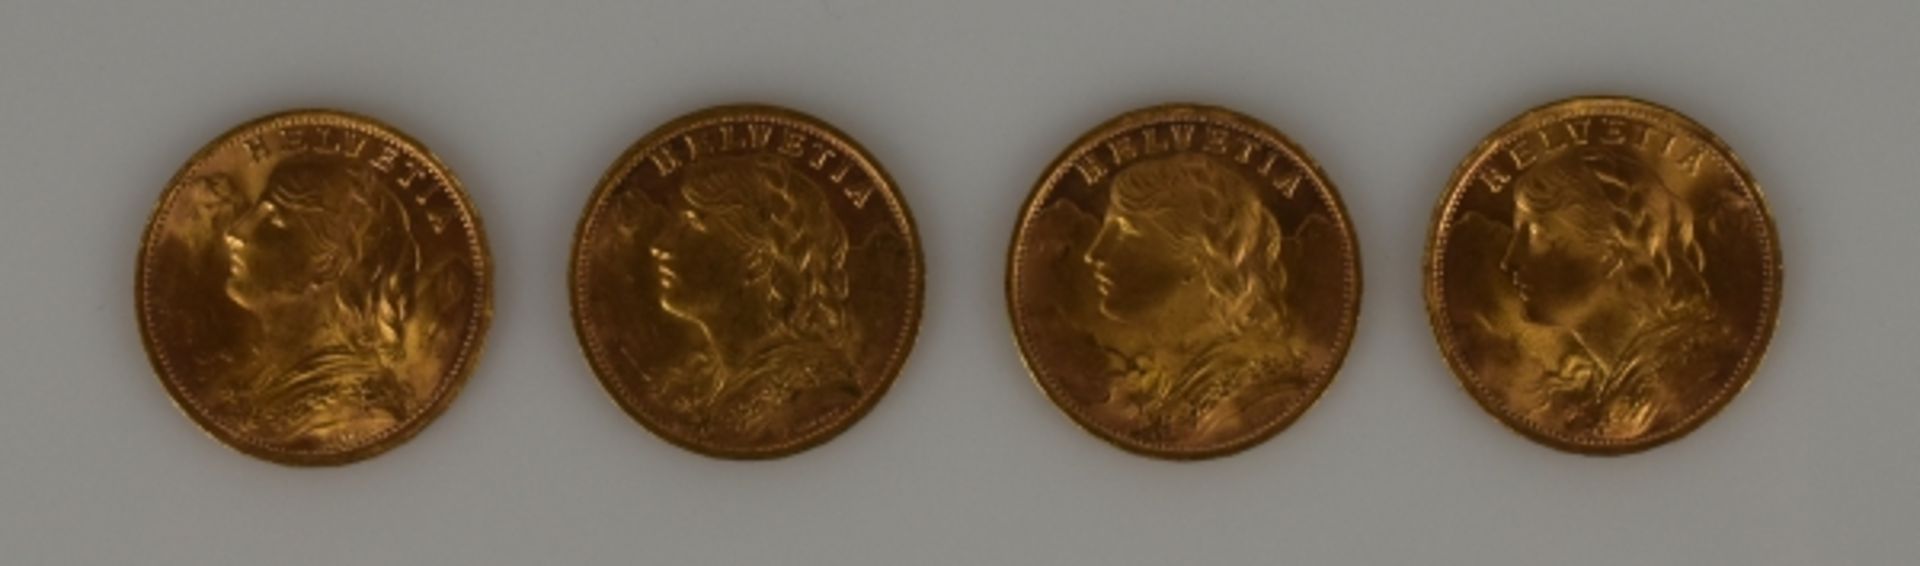 4 GOLDMÜNZEN 20 Fr. (Vreneli) Schweiz 1935 (4x), 25,8g - Bild 2 aus 2